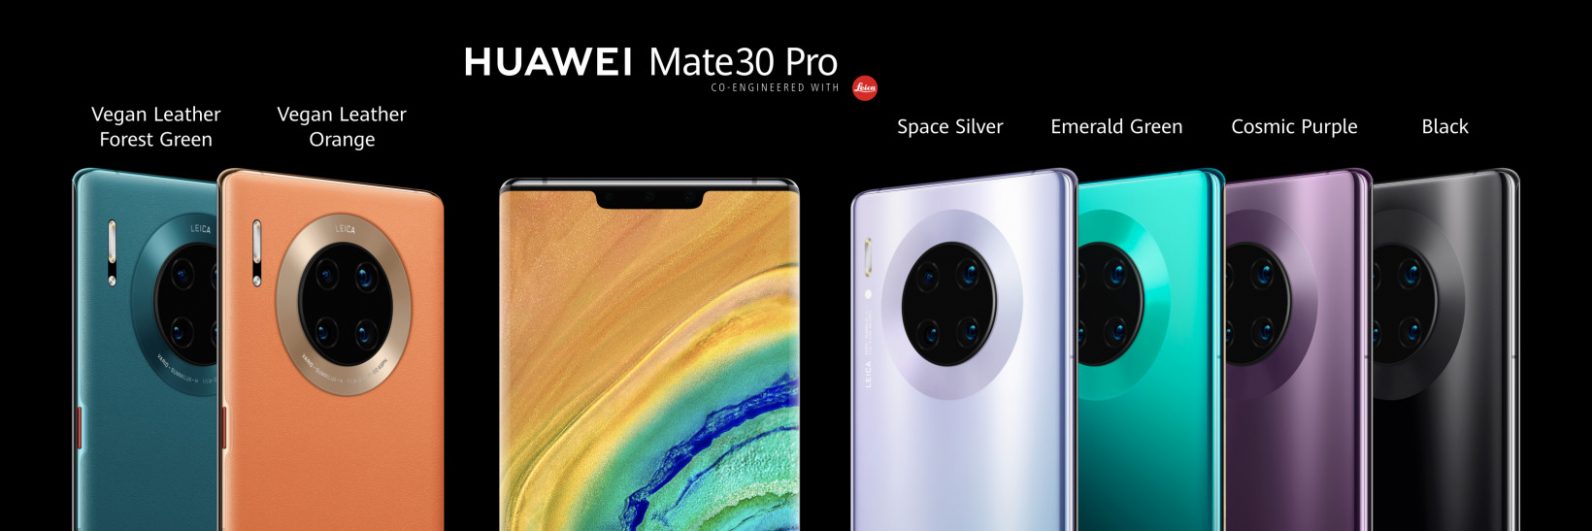 O Huawei Mate 30 Pro será lançado sem o Google Play